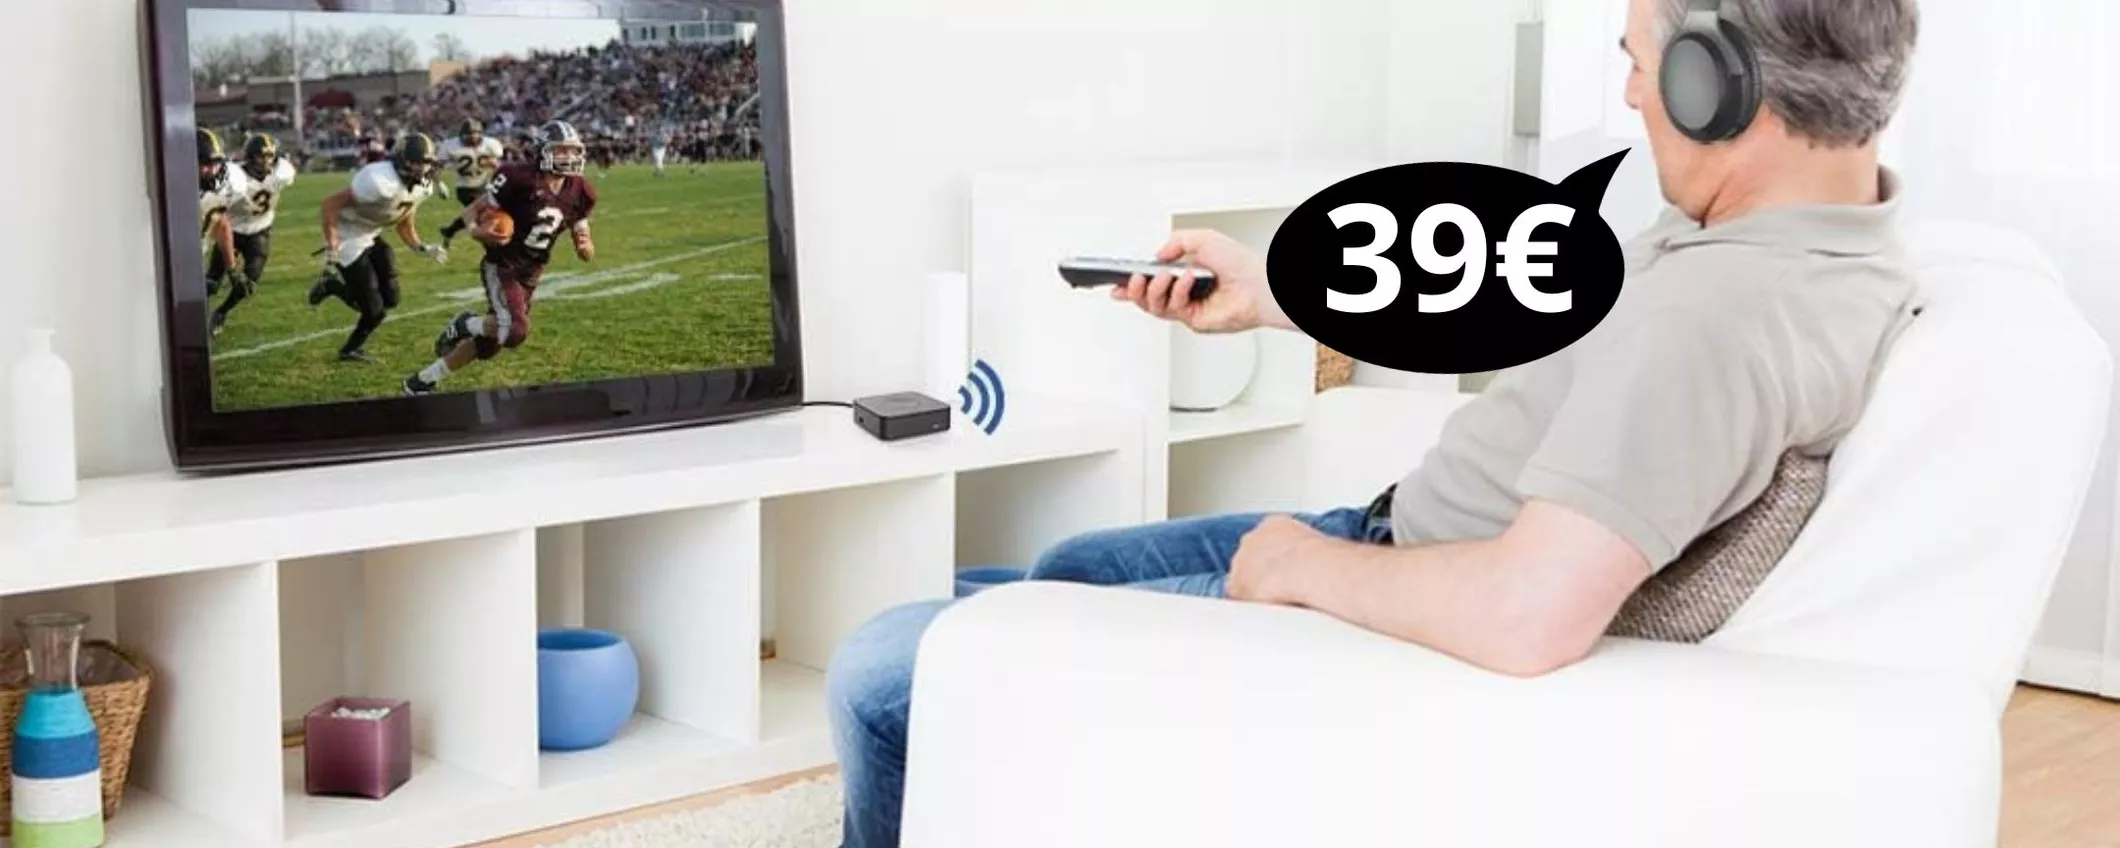 Trasmettitore ricevitore Bluetooth per TV in OFFERTA: lo porti a casa con soli 39 euro!